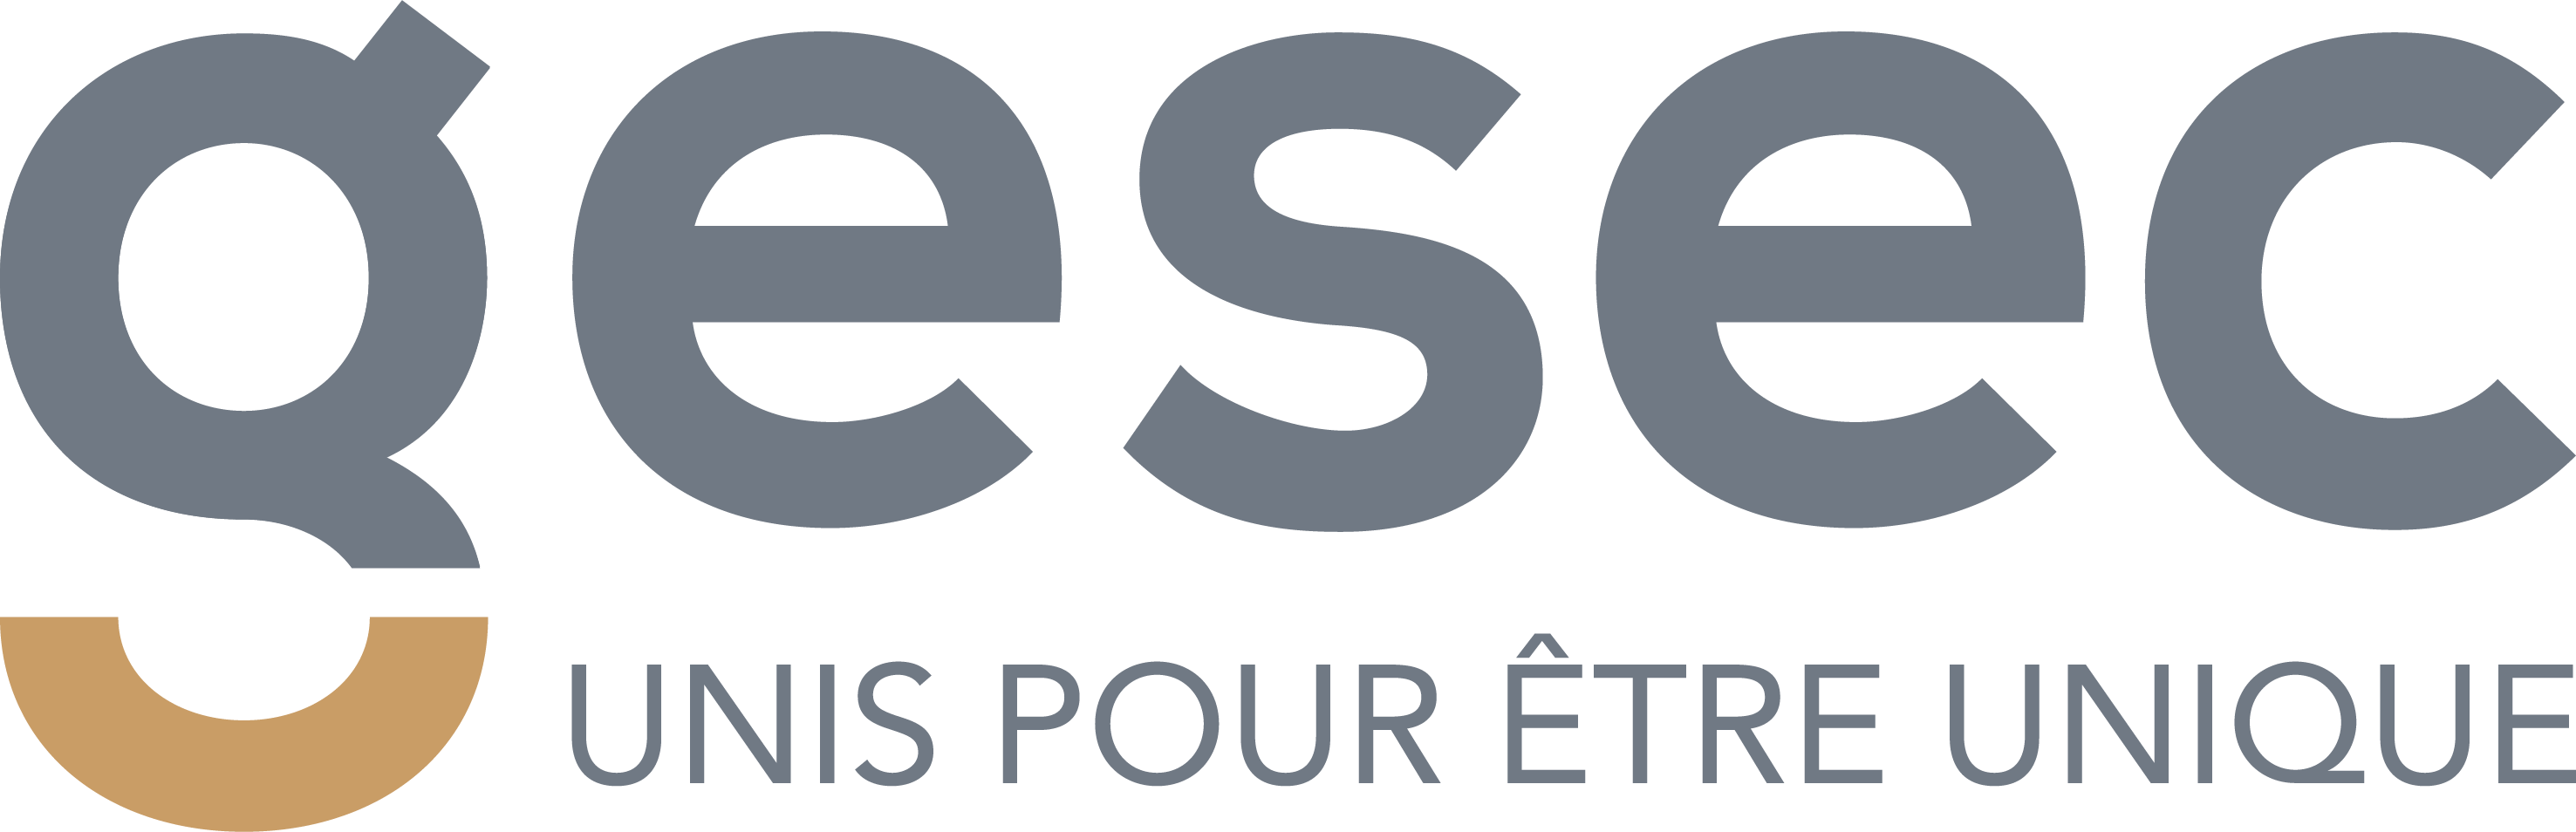 GESEC-logo